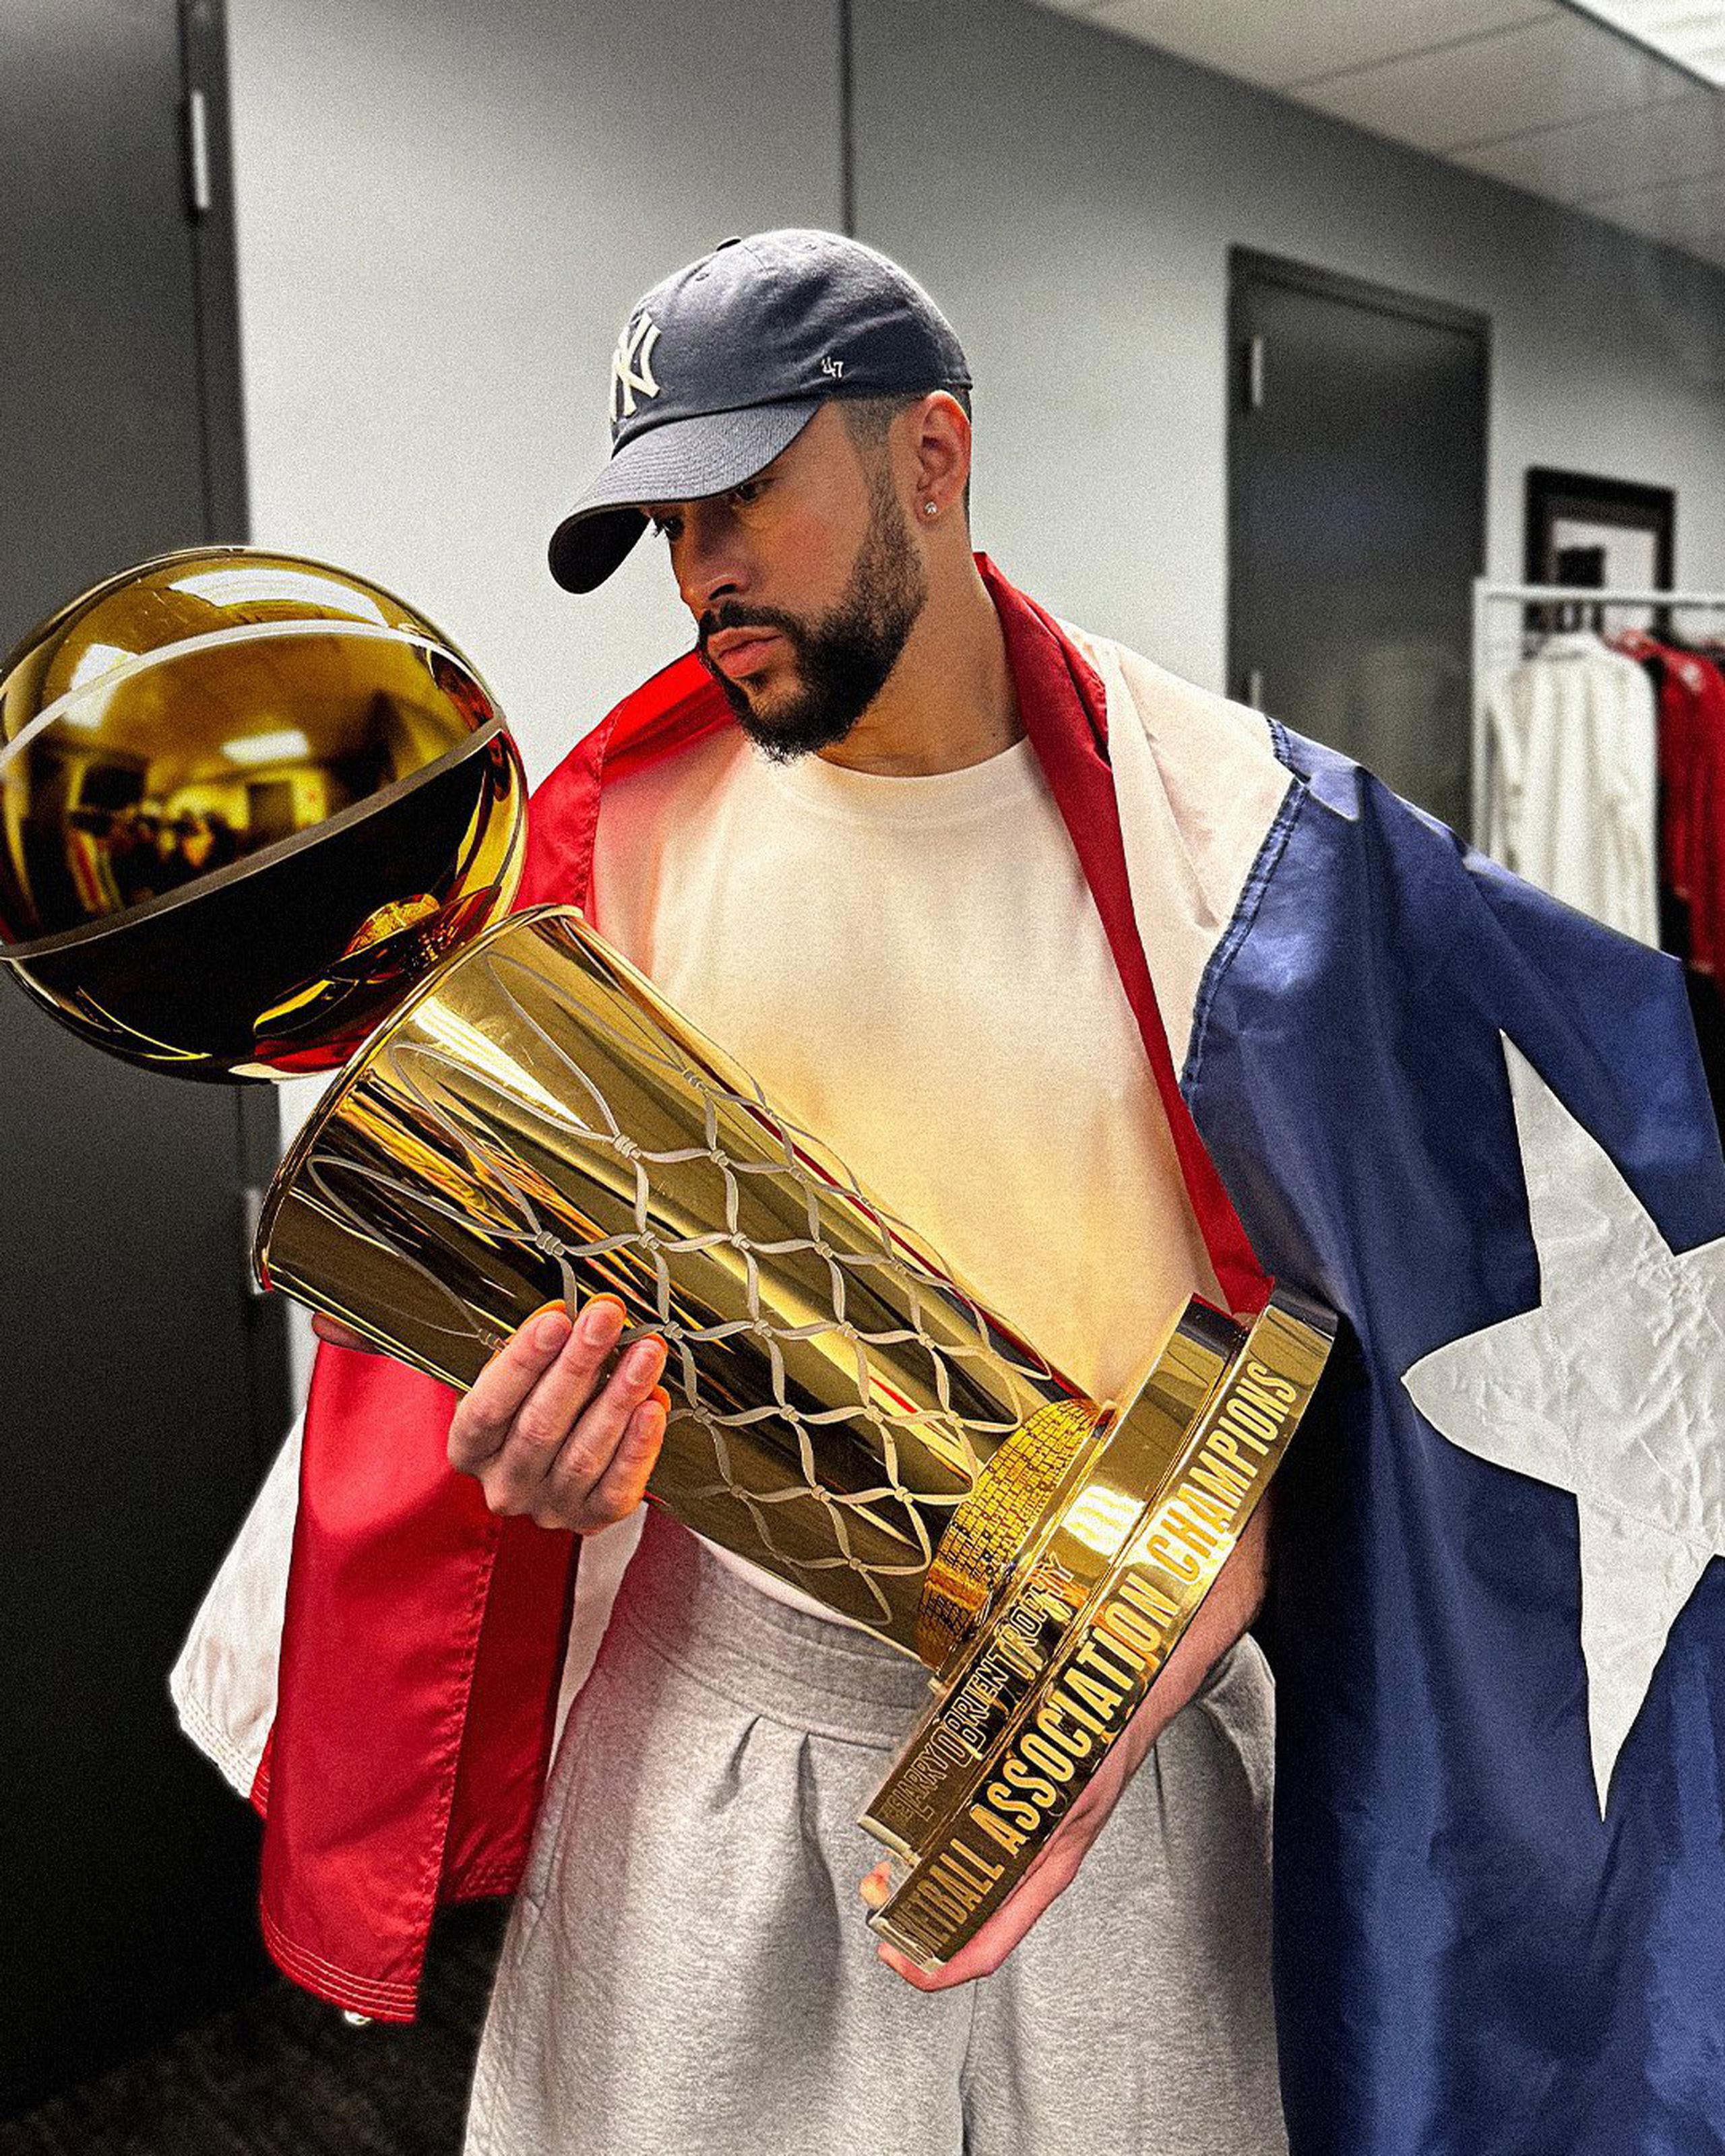 En un vídeo publicado por la NBA, se aprecia al artista arropado con una bandera de Puerto Rico mientras sostiene el trofeo